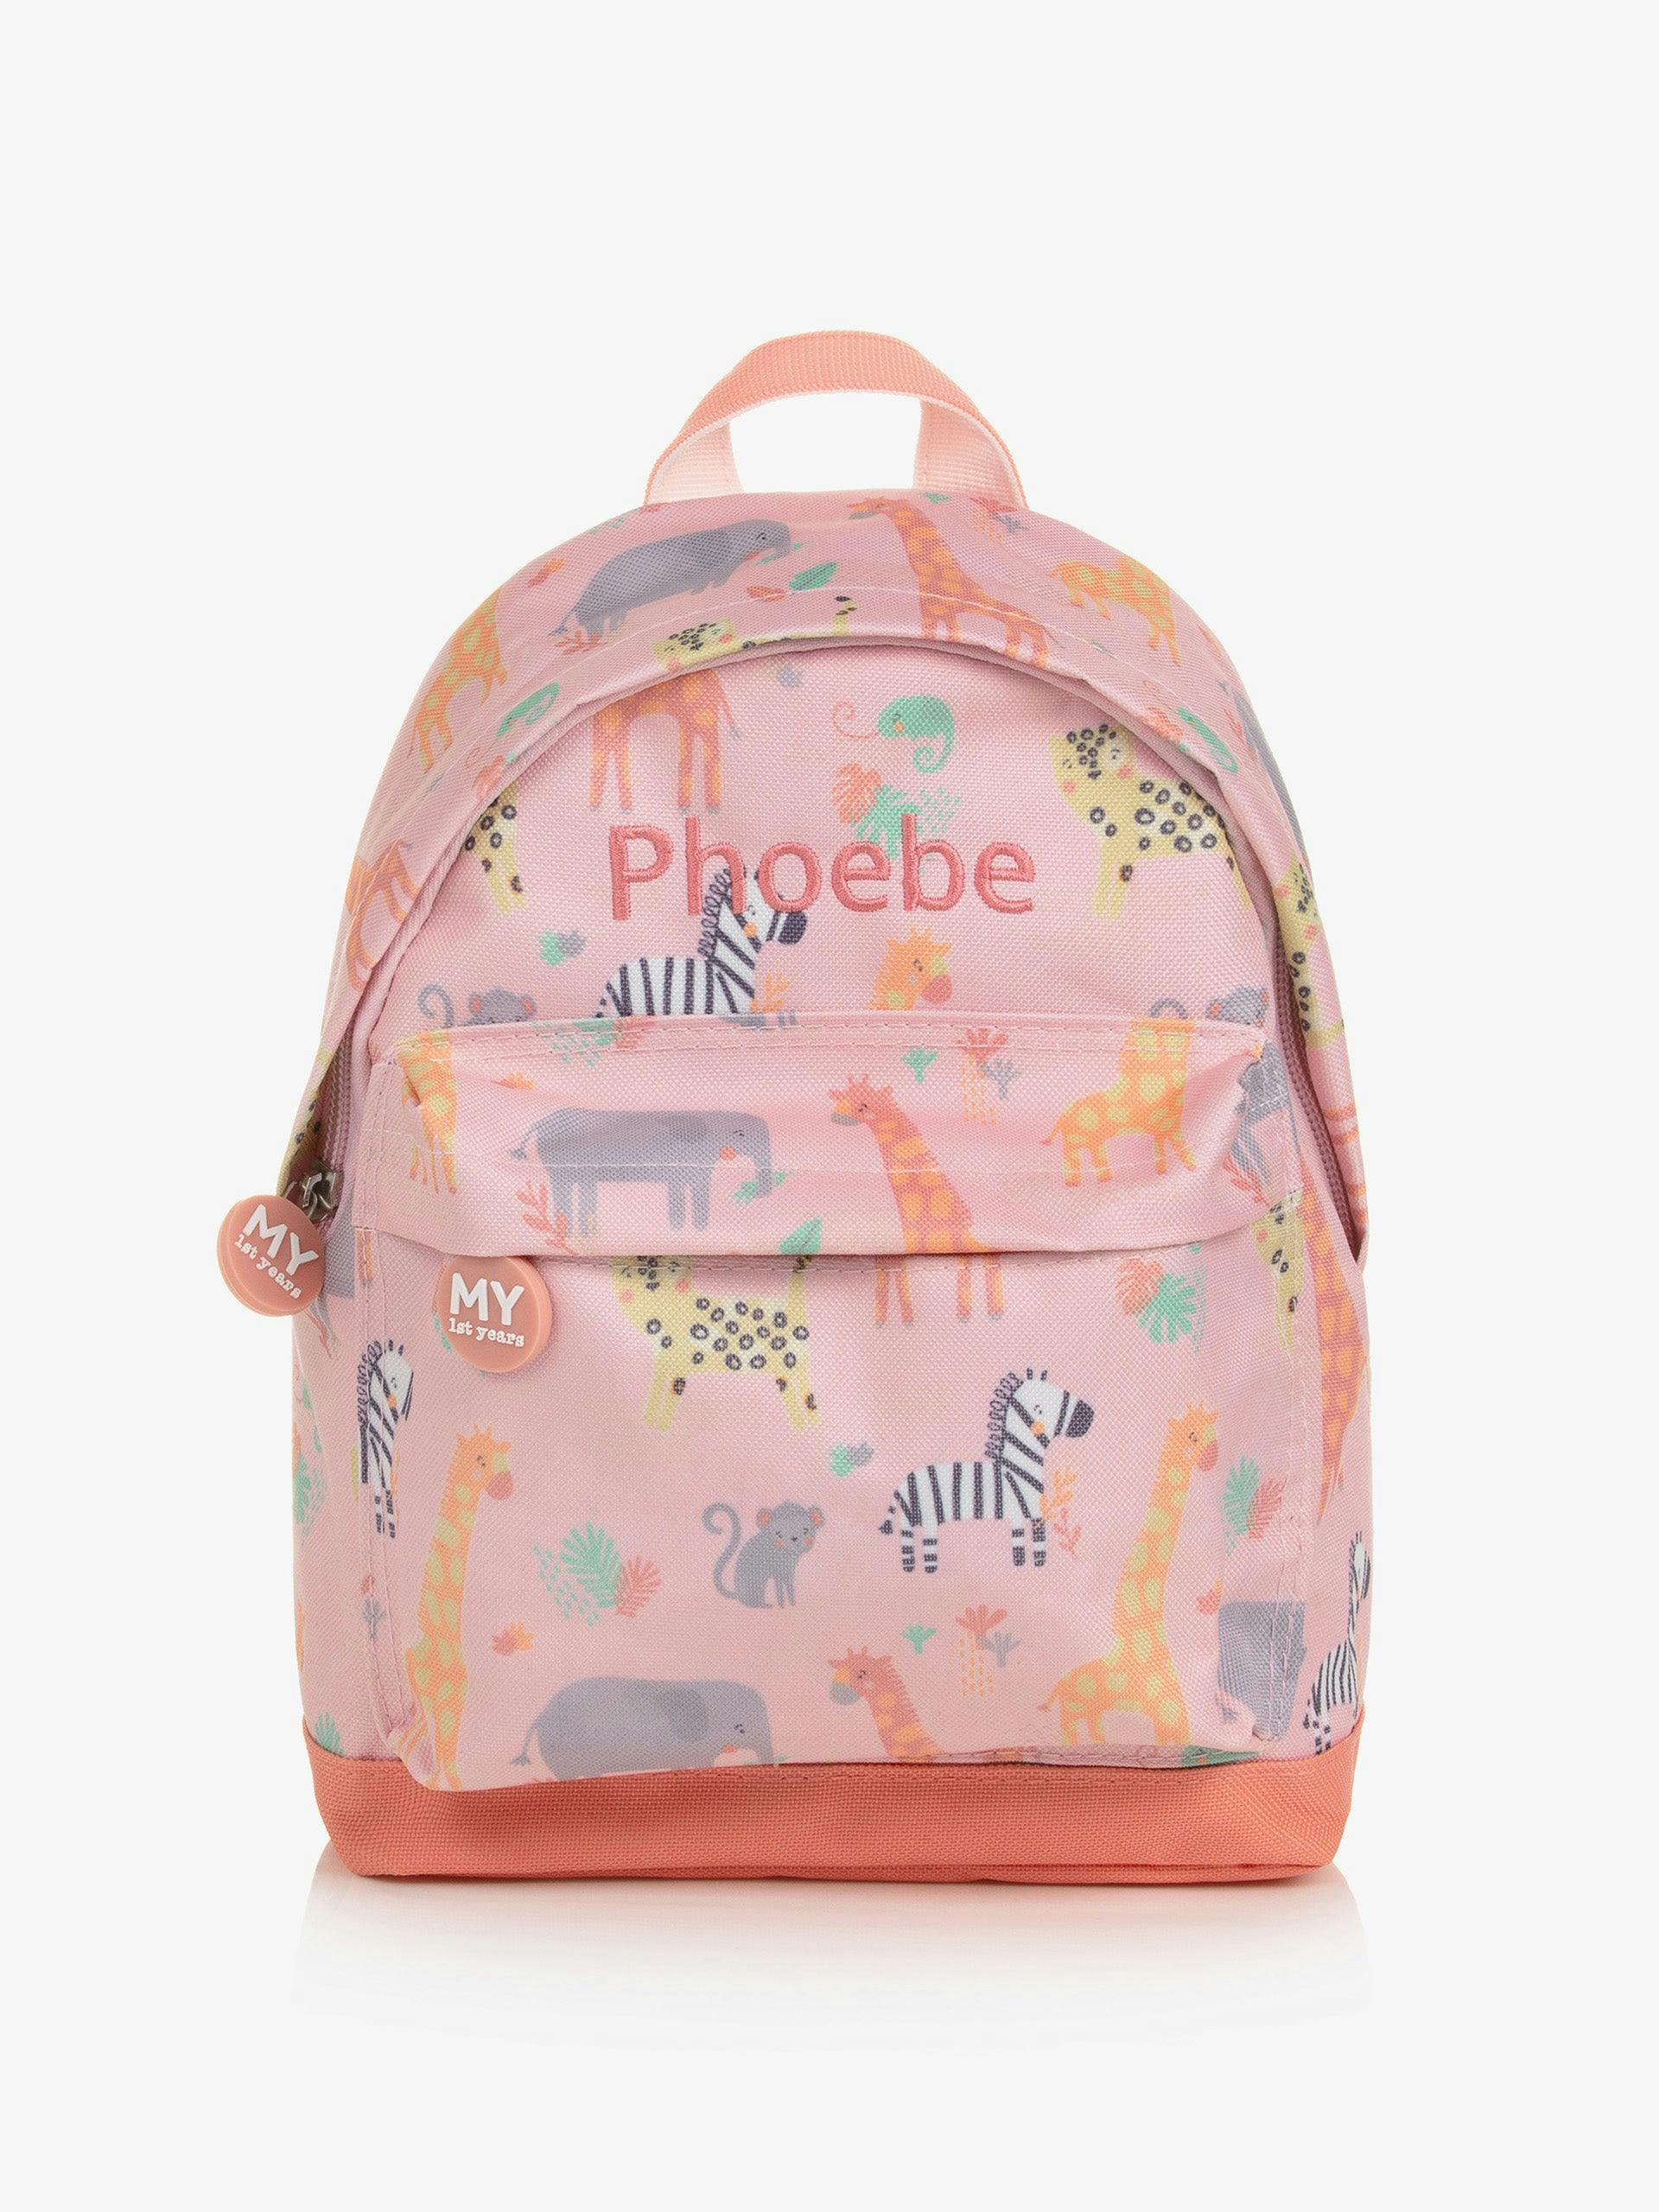 Pink personalised backpack